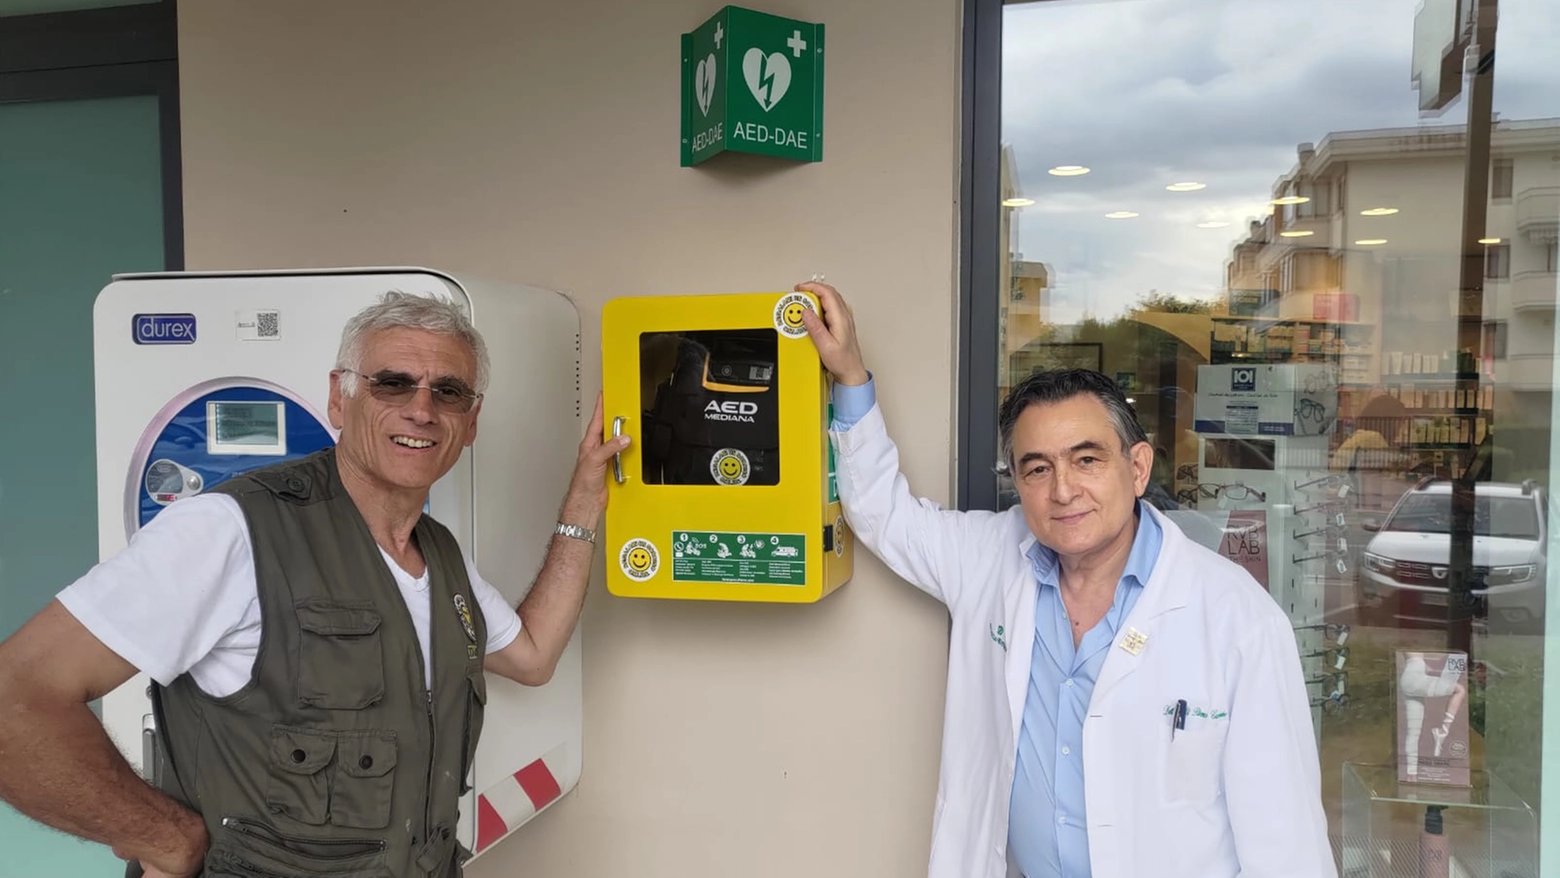 Il defibrillatore (foto Regalami un sorriso)